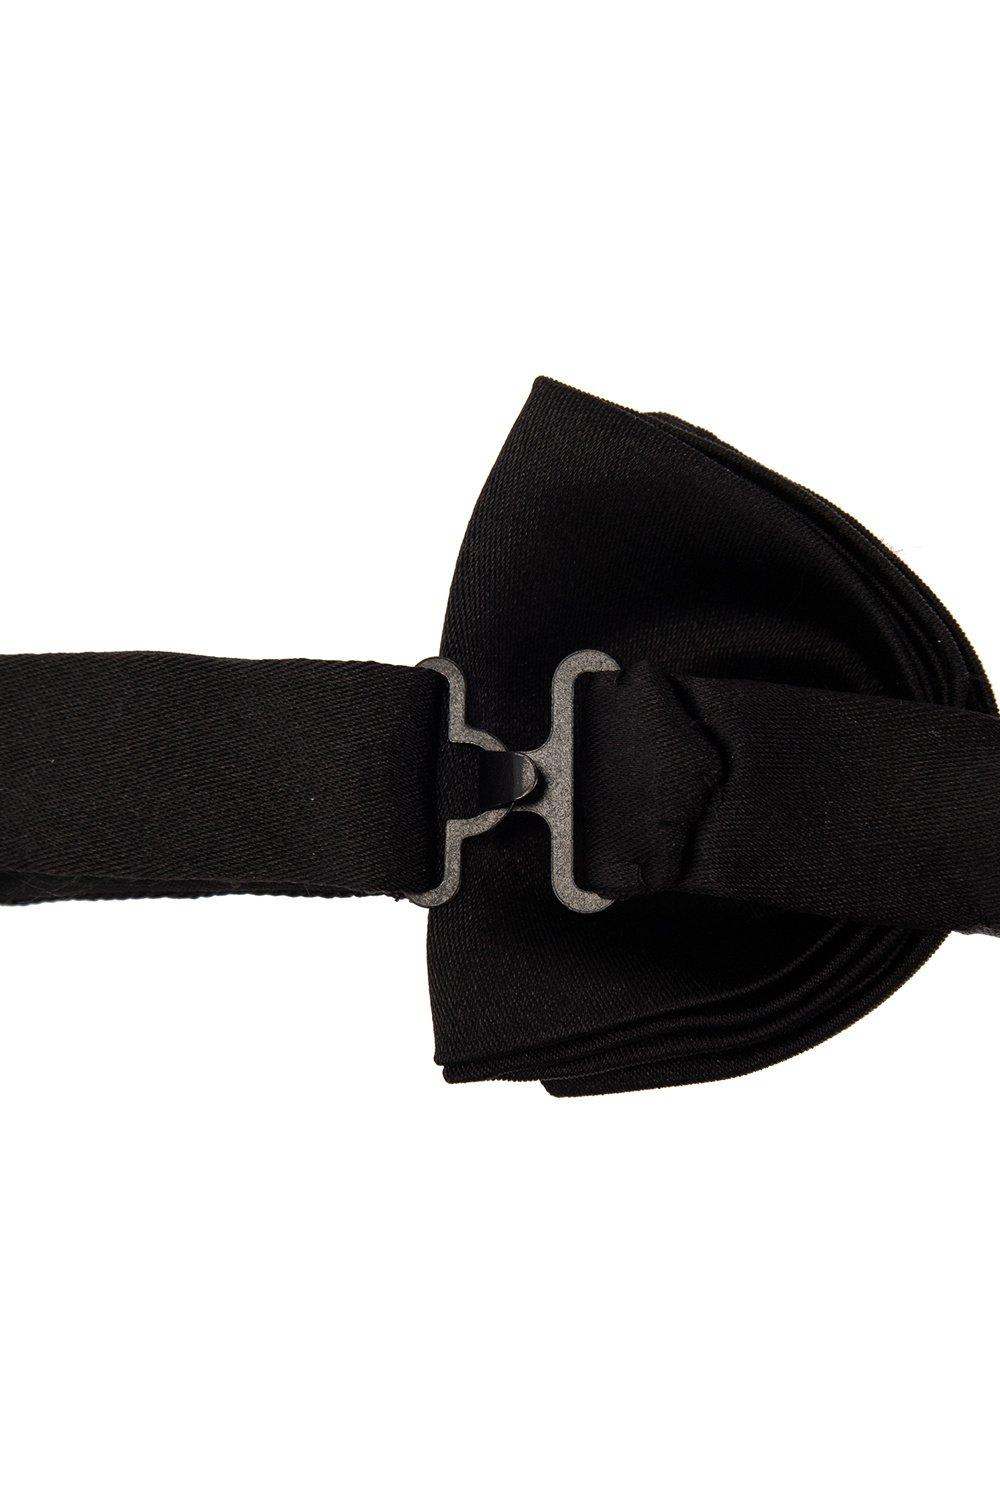 Shop Ferragamo Bow Tie In Black